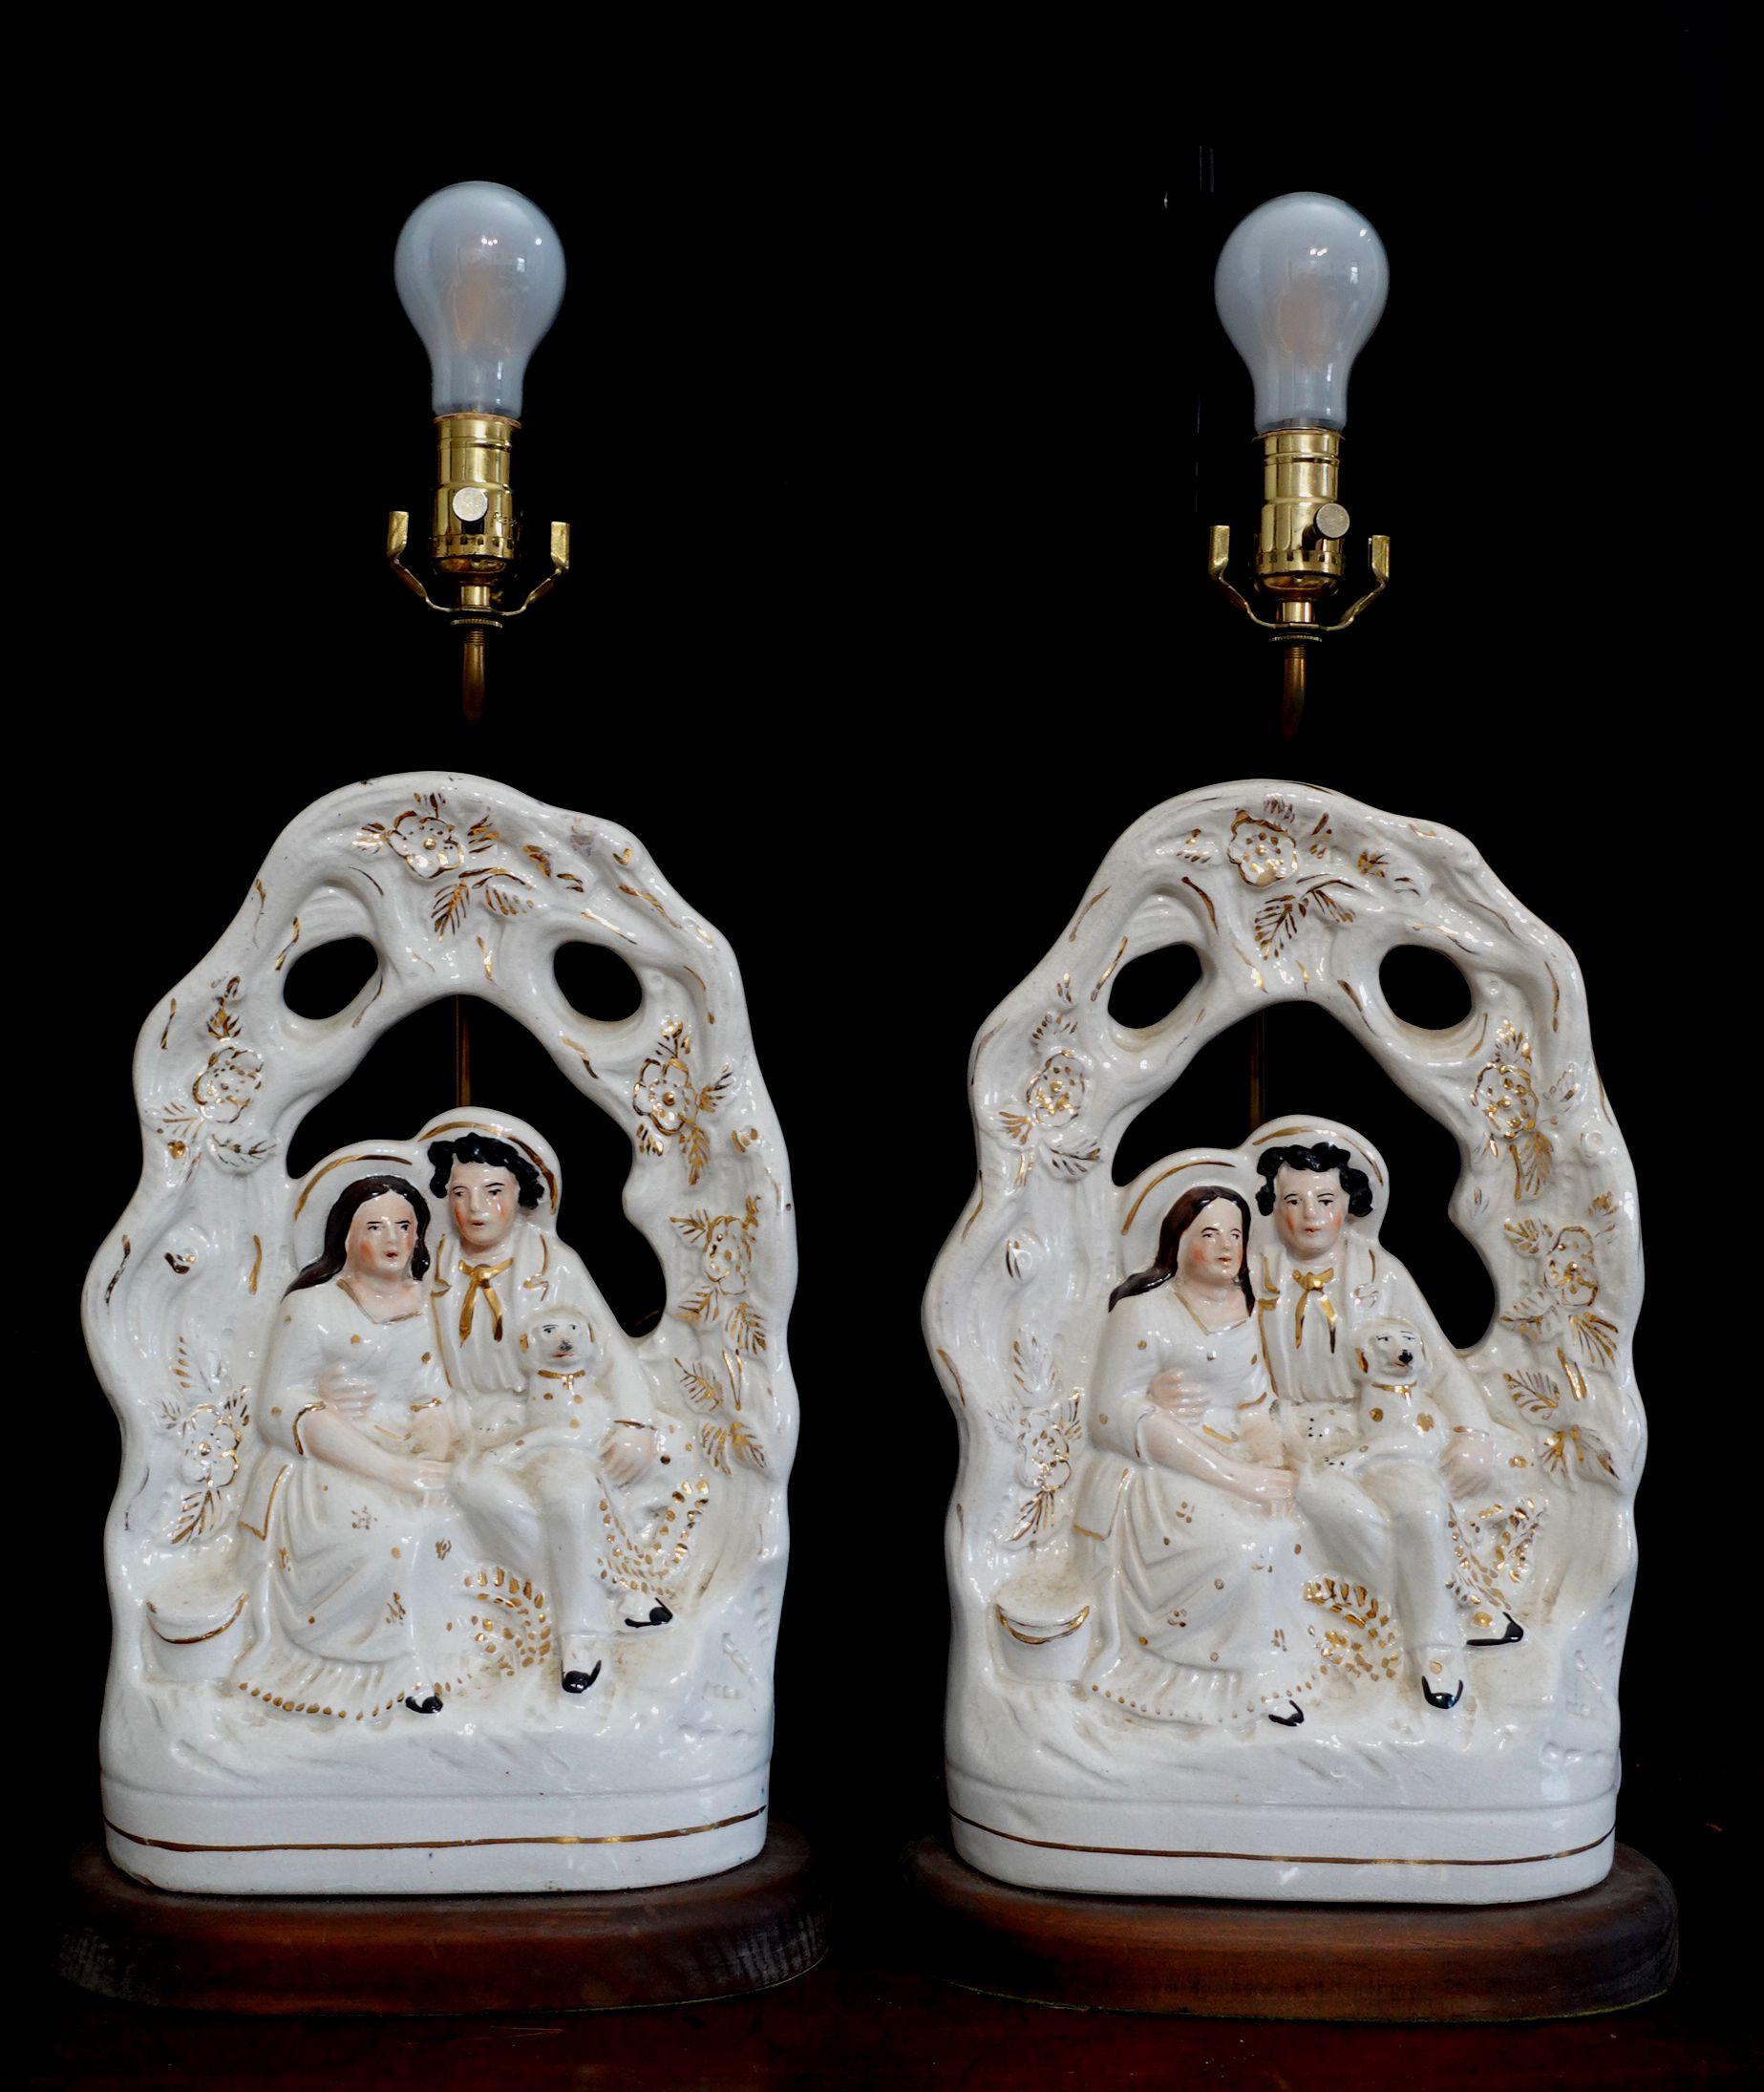 Magnifiquement peint et impressionnant, le groupe de poteries Staffordshire Arbor Couple du Staffordshire Figurine La glaçure blanche globale appliquée sur toute la porcelaine est un merveilleux effet, avec des reflets dorés sur toute la surface.